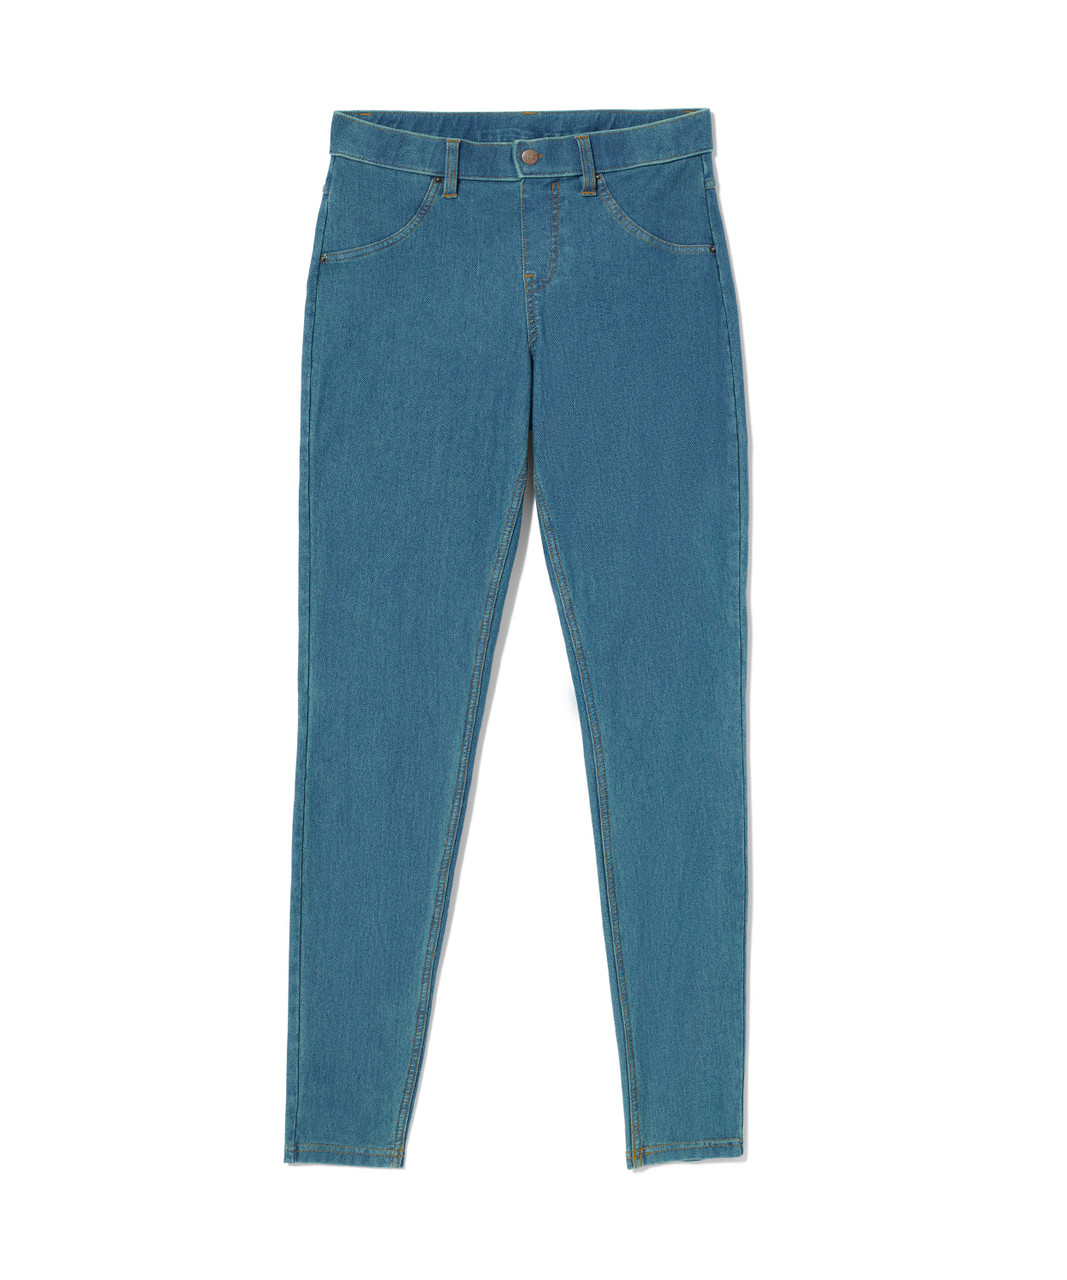 HUE, Jeans, Denim Hue Jeggings Size Xs False Front Pockets Backpockets  Elastic Waist